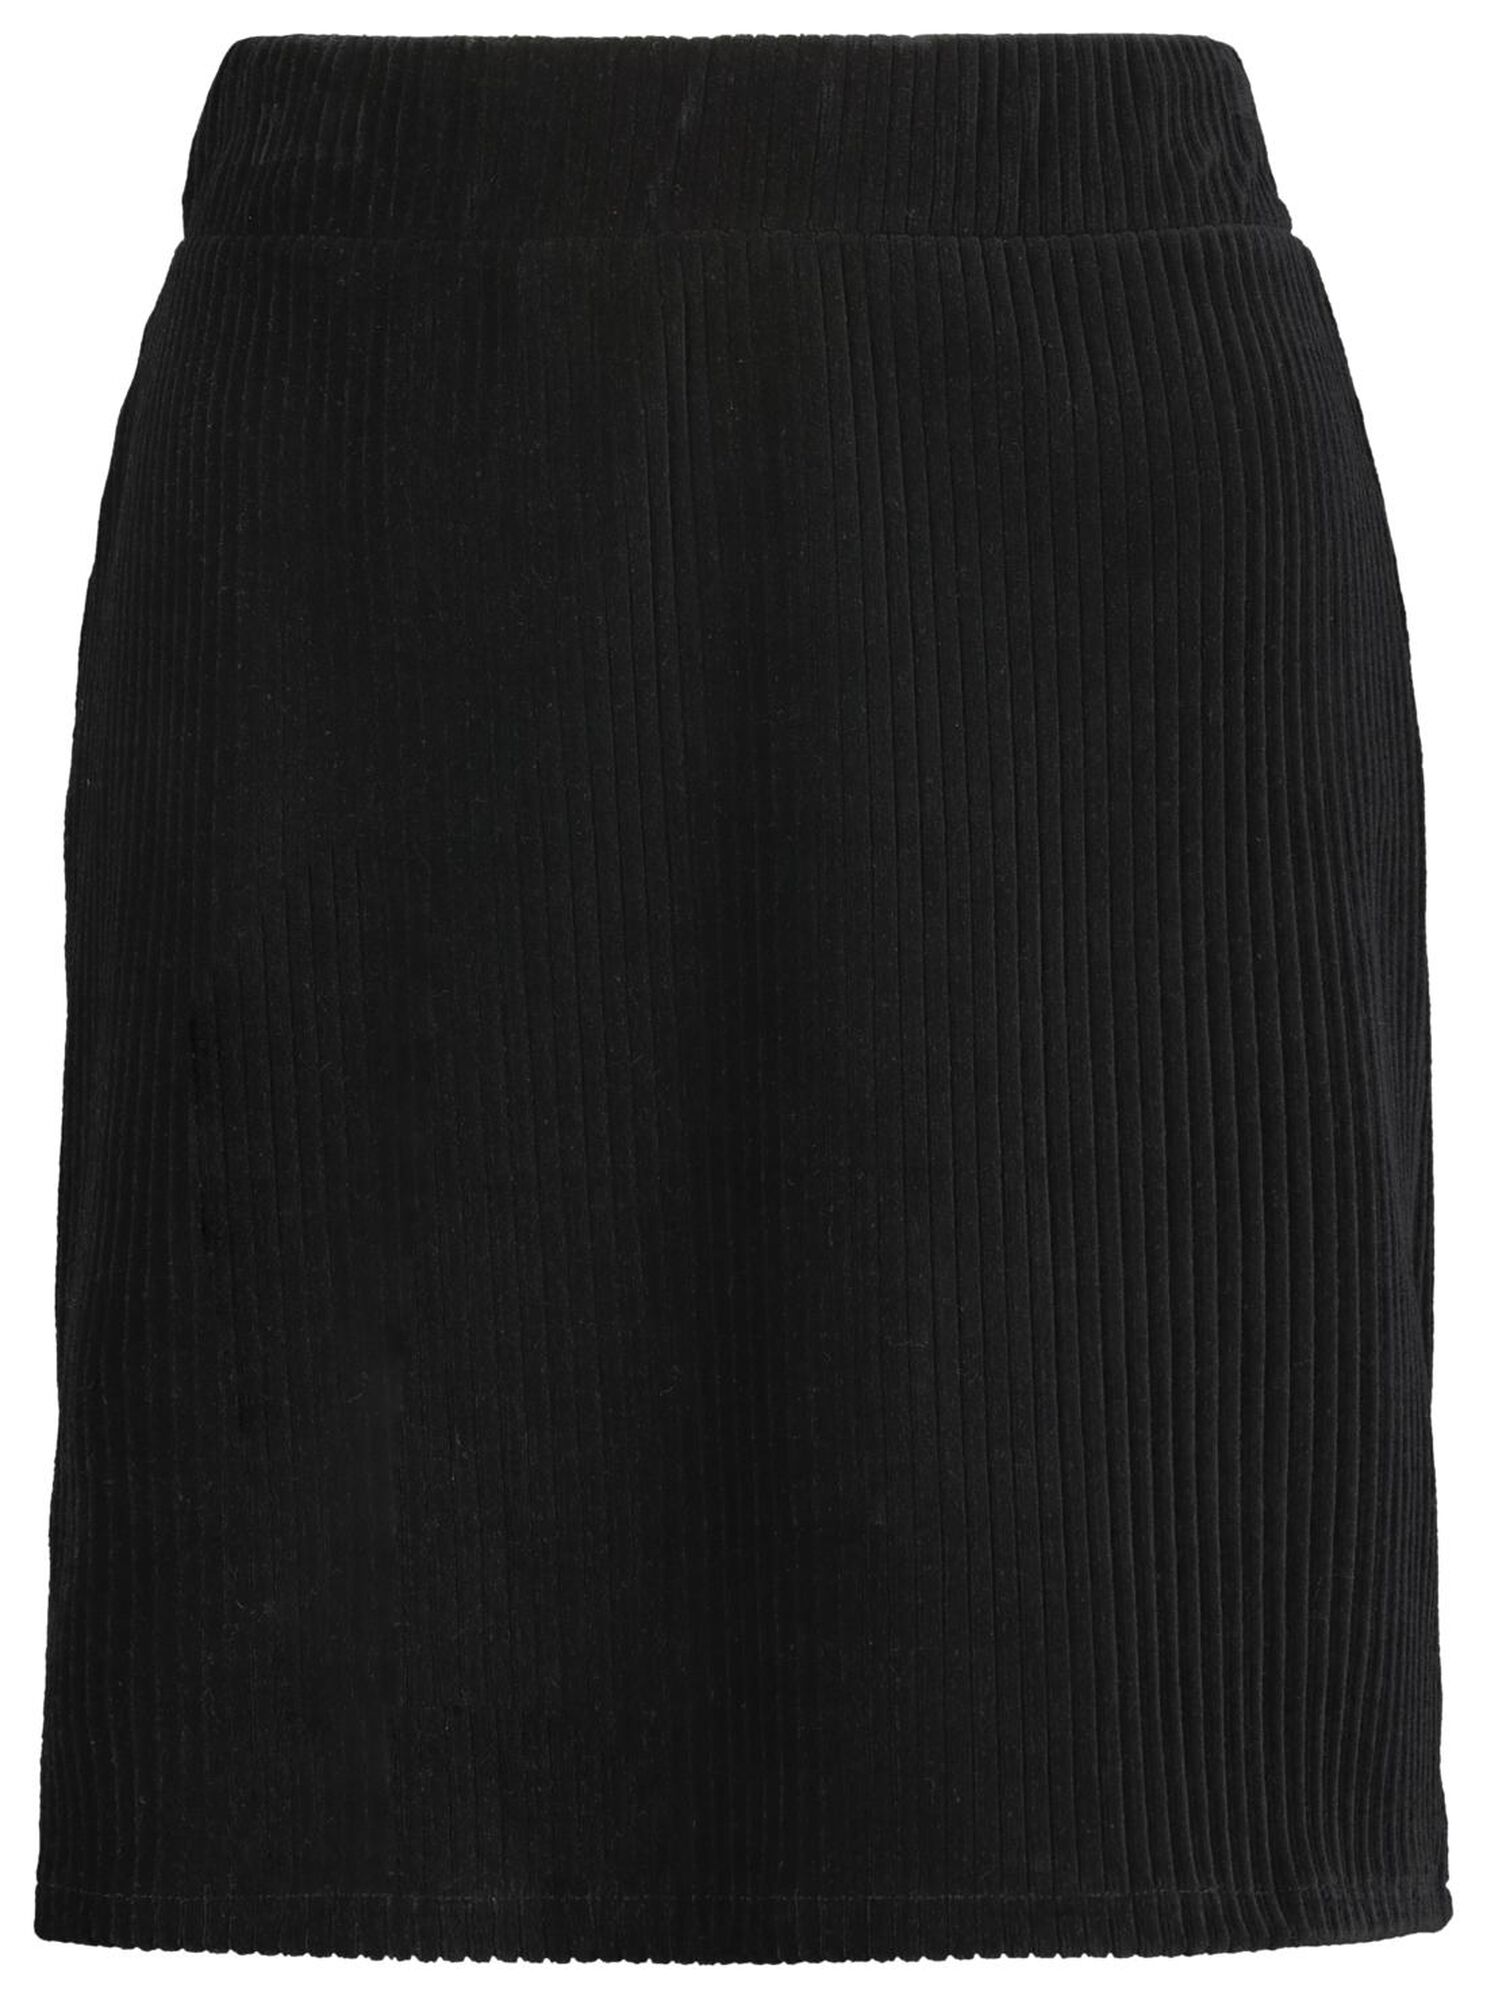 women's skirt ribbed corduroy black - HEMA